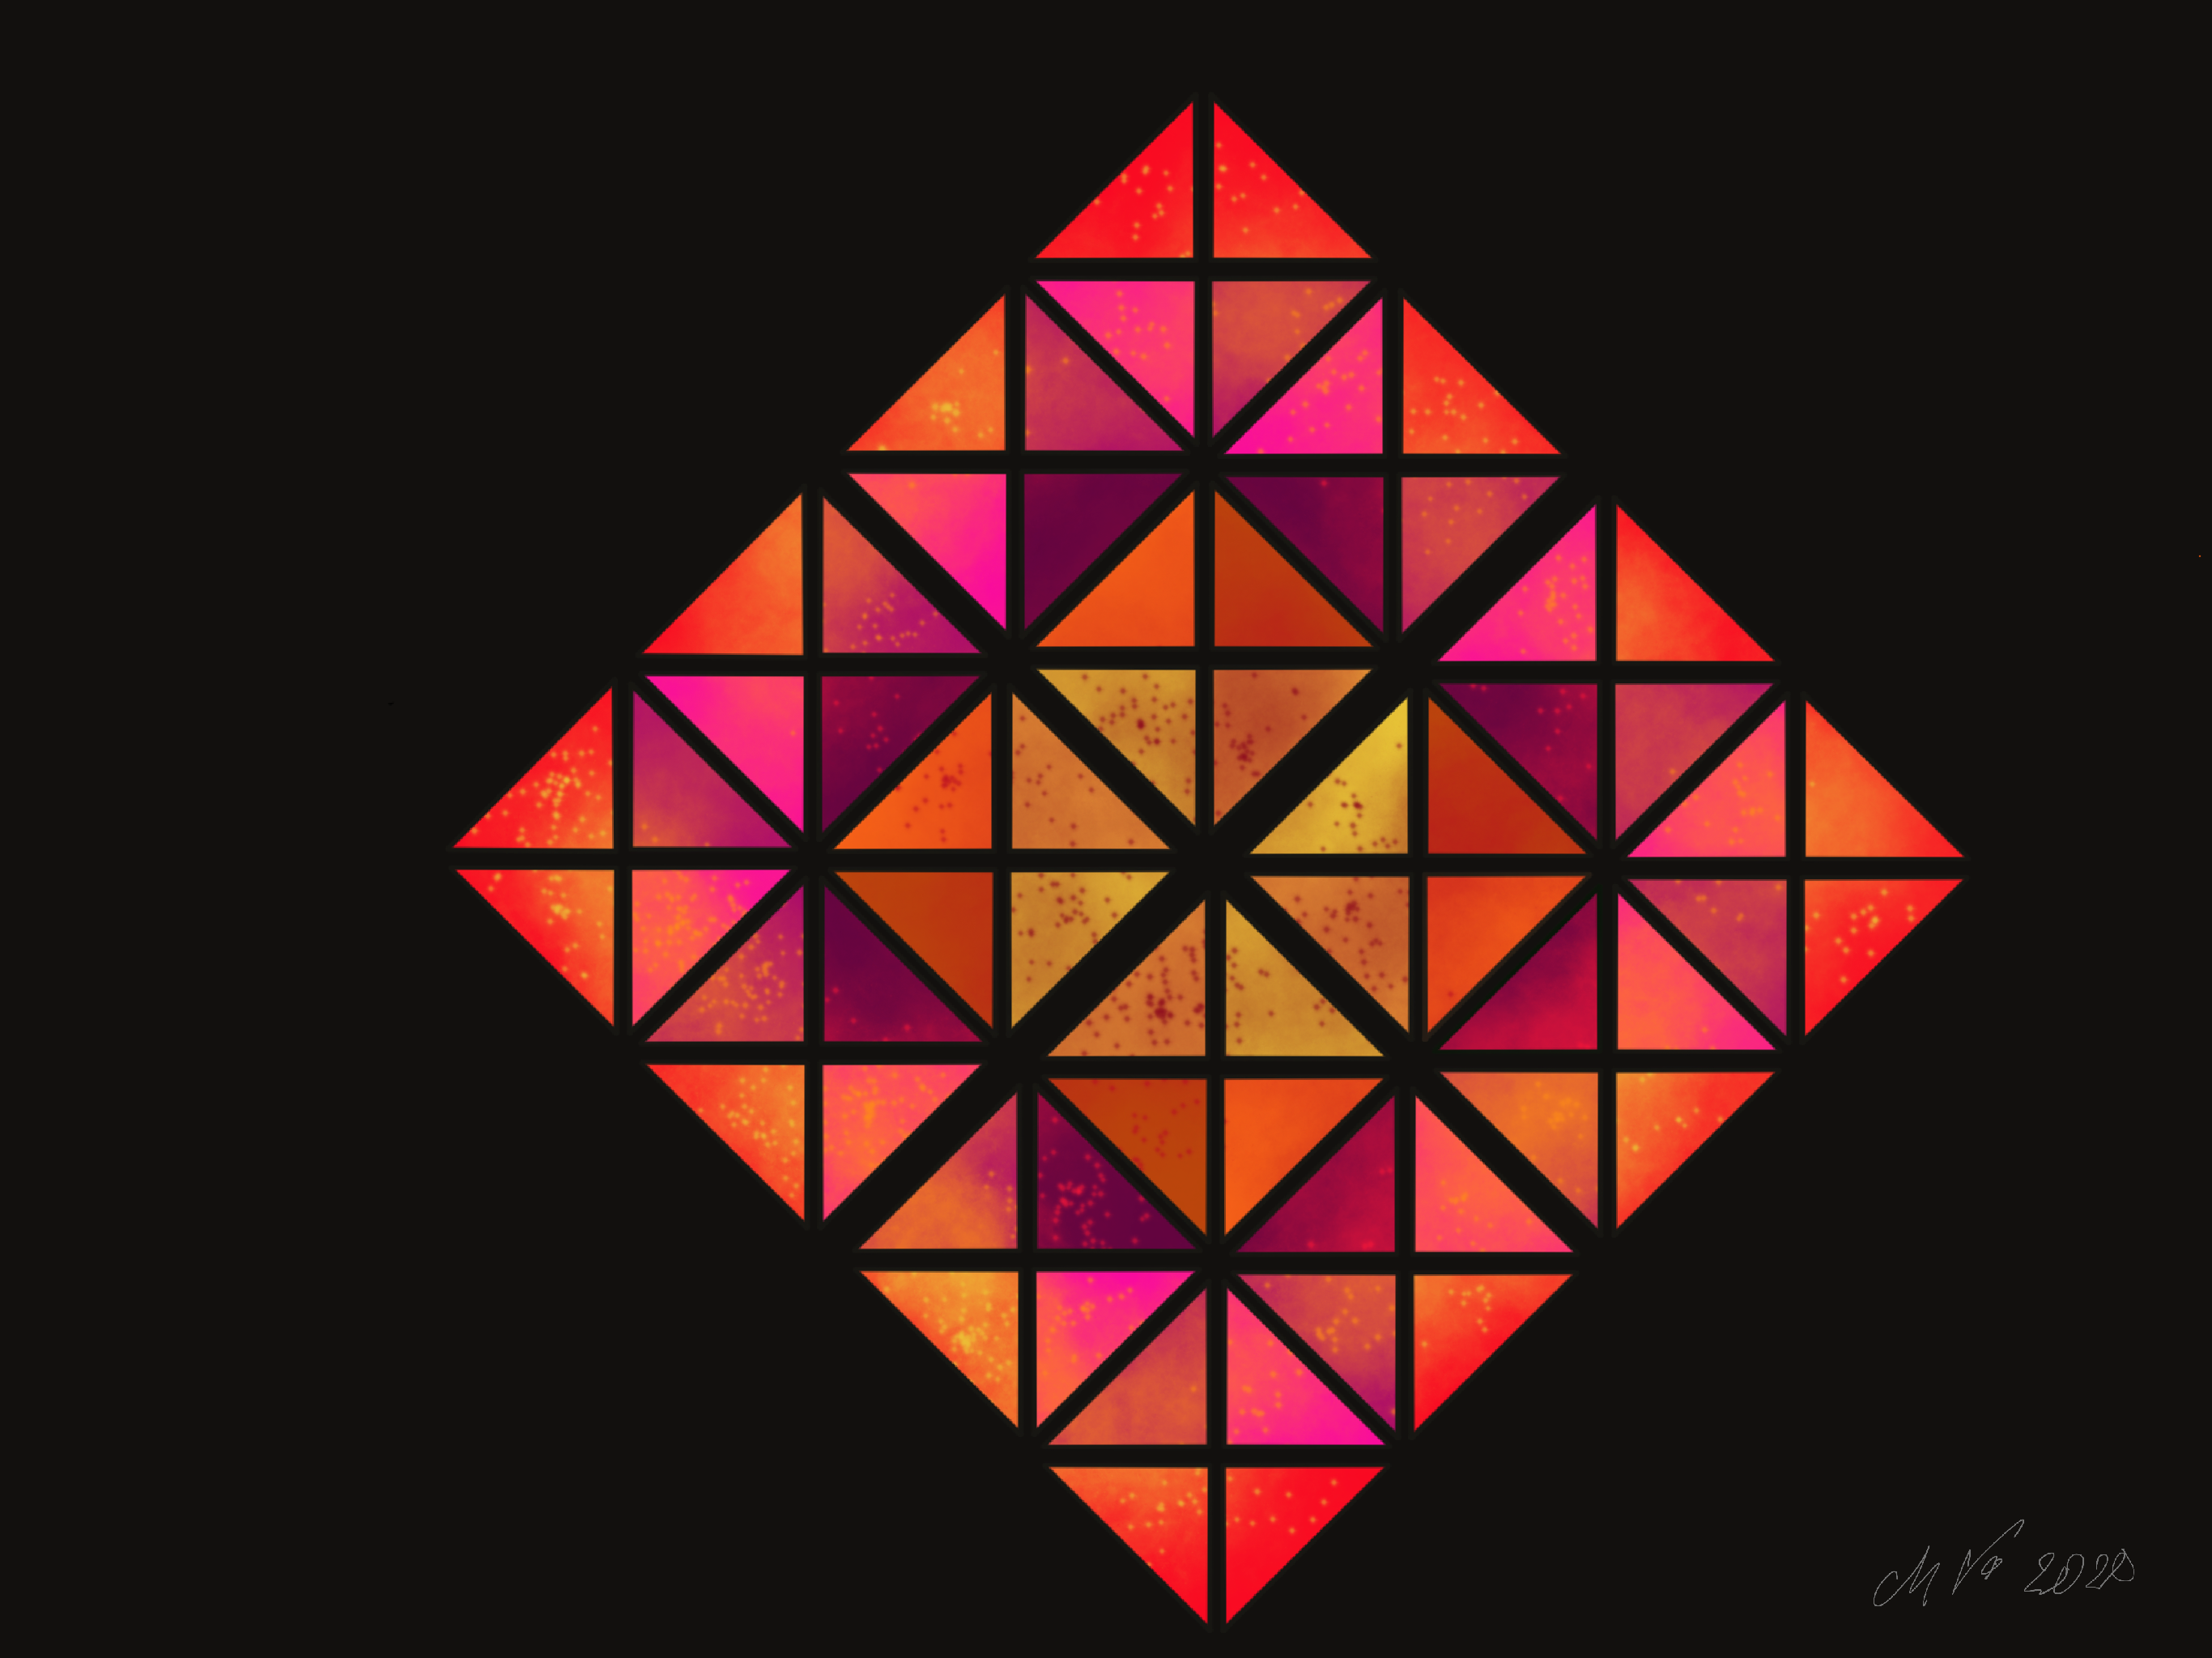 Das Dreieck als Viereck